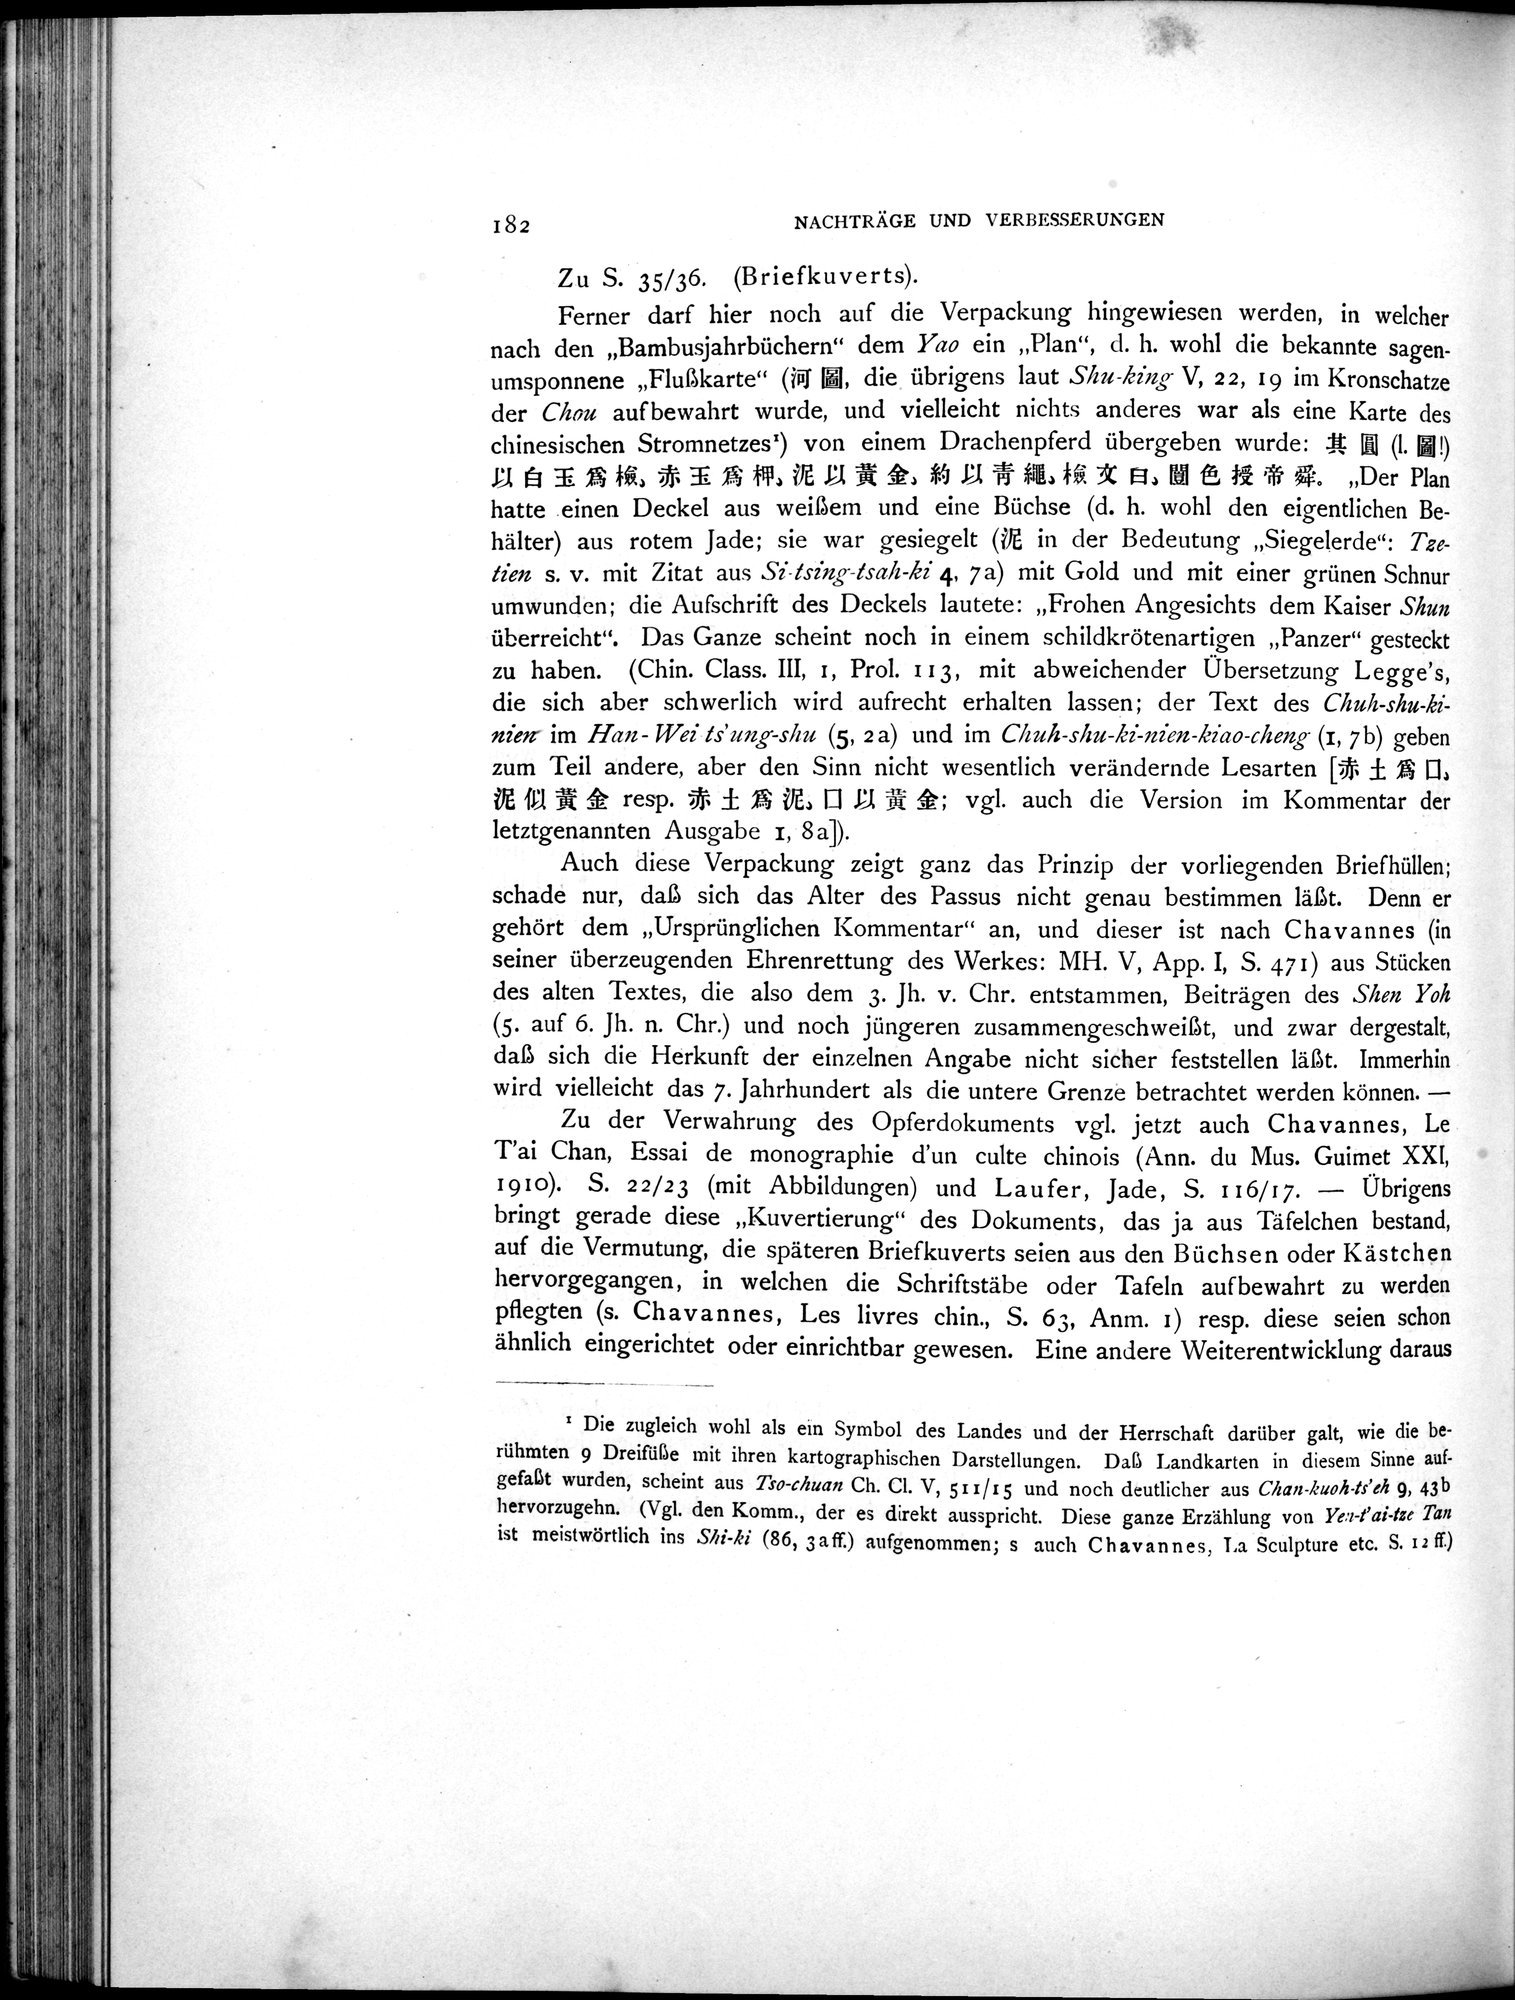 Die Chinesischen Handschriften- und sonstigen Kleinfunde Sven Hedins in Lou-lan : vol.1 / Page 206 (Grayscale High Resolution Image)